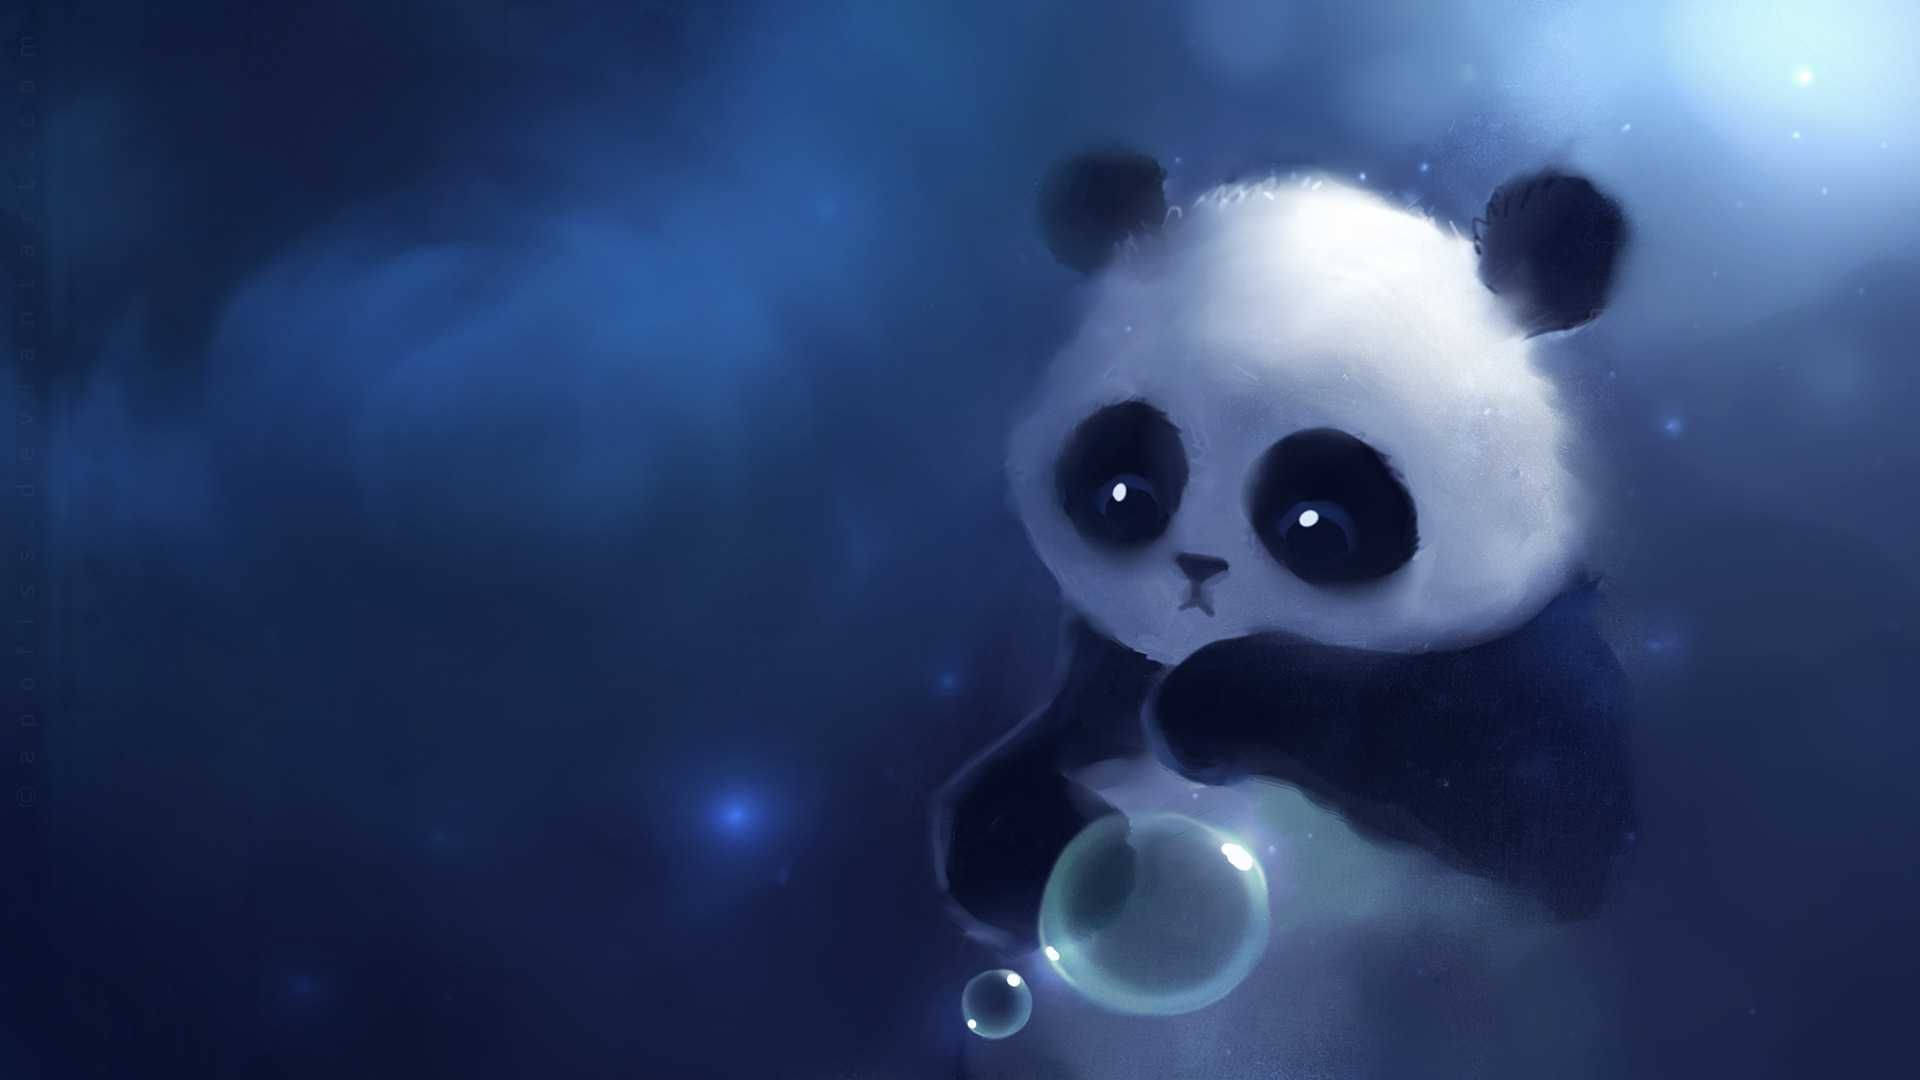 Pandafigur, Djurkaraktär, Målning. Wallpaper